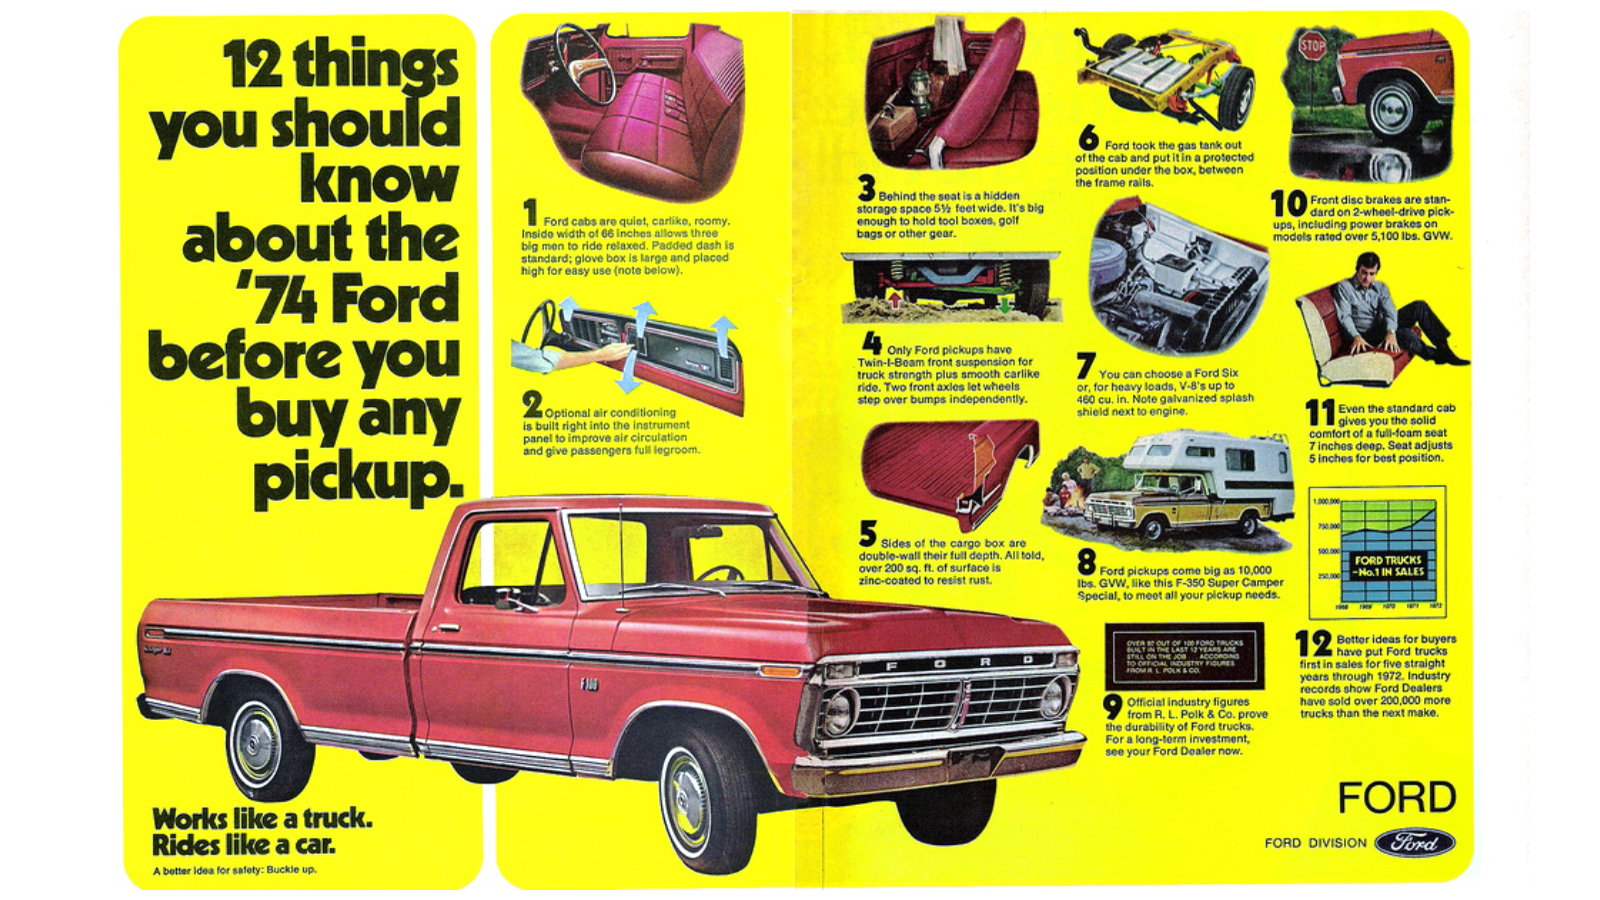 1983 Ford F 5 Pickup Truck 23 MPG Original Print Ad 8.5 x 11 " 